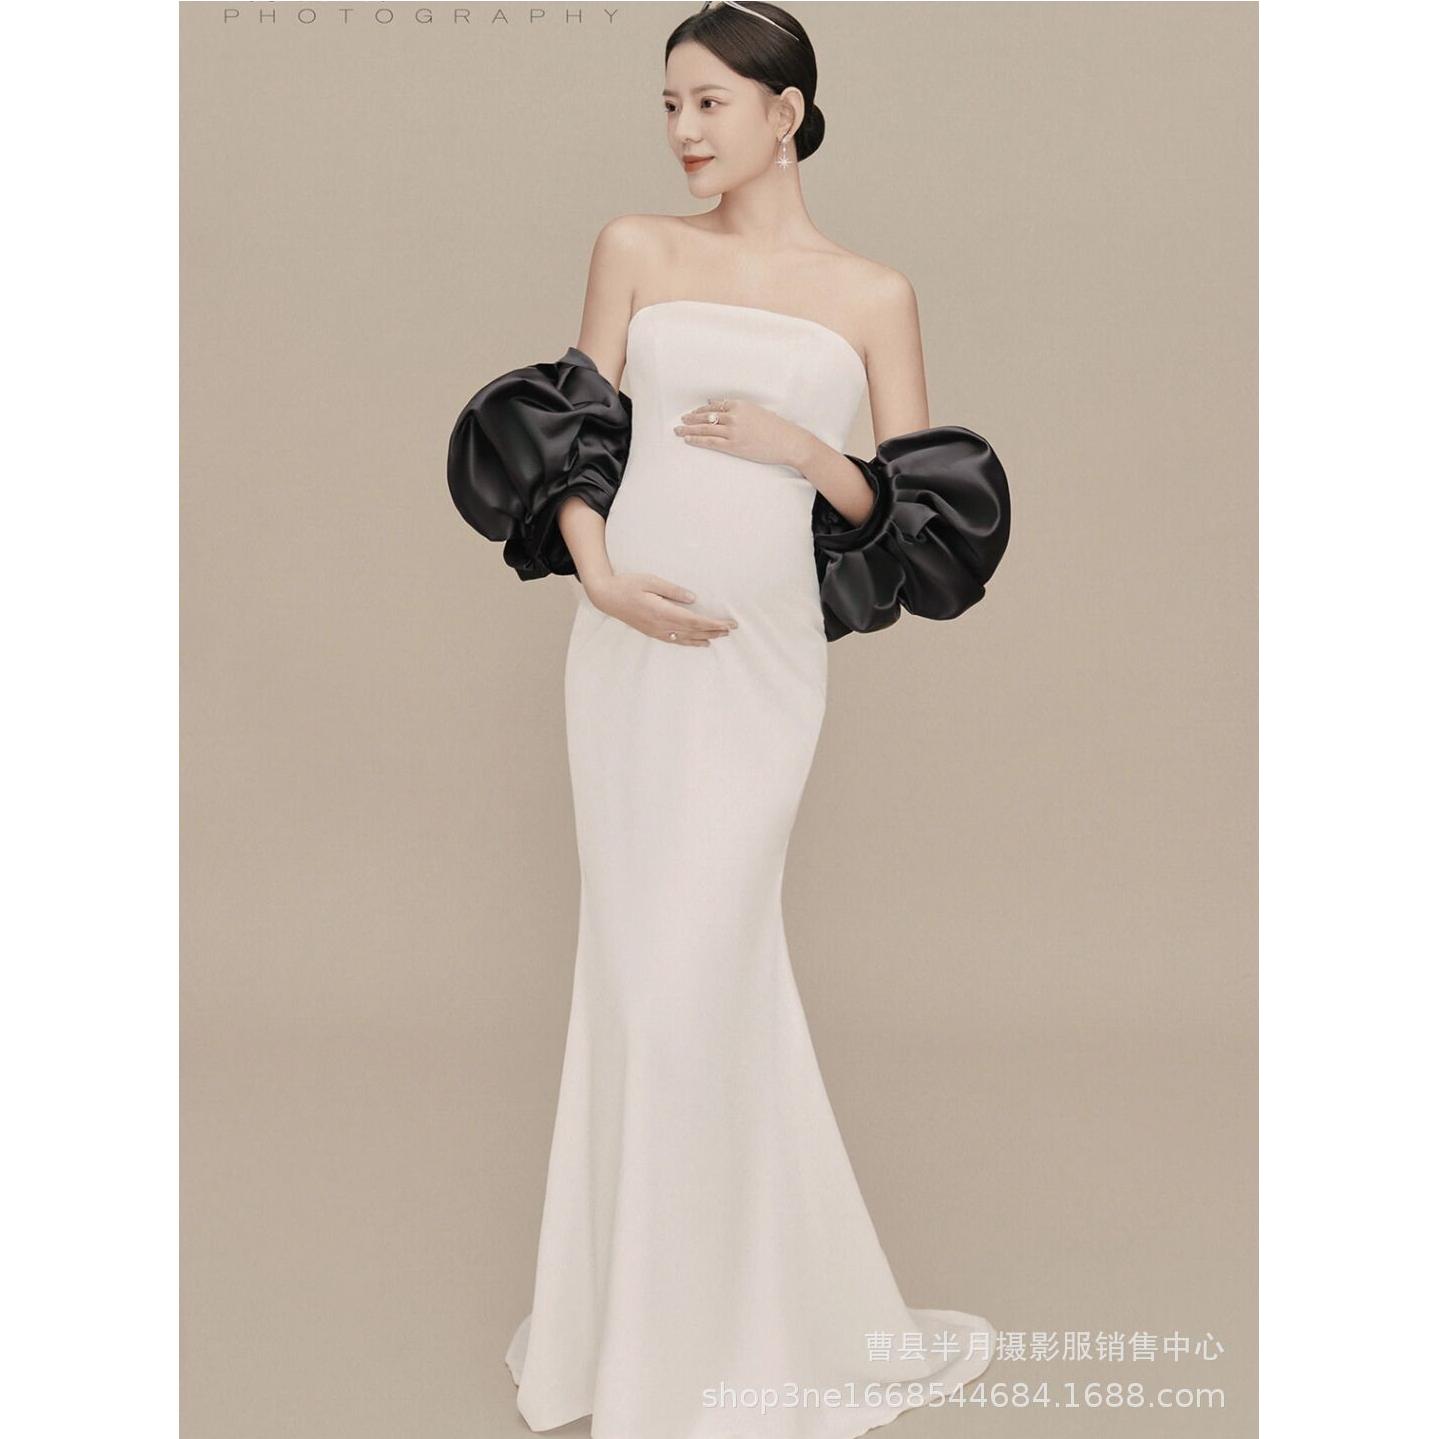 新款孕妇拍照服装唯美白色礼服影楼摄影妈咪艺术照写真连衣裙韩式